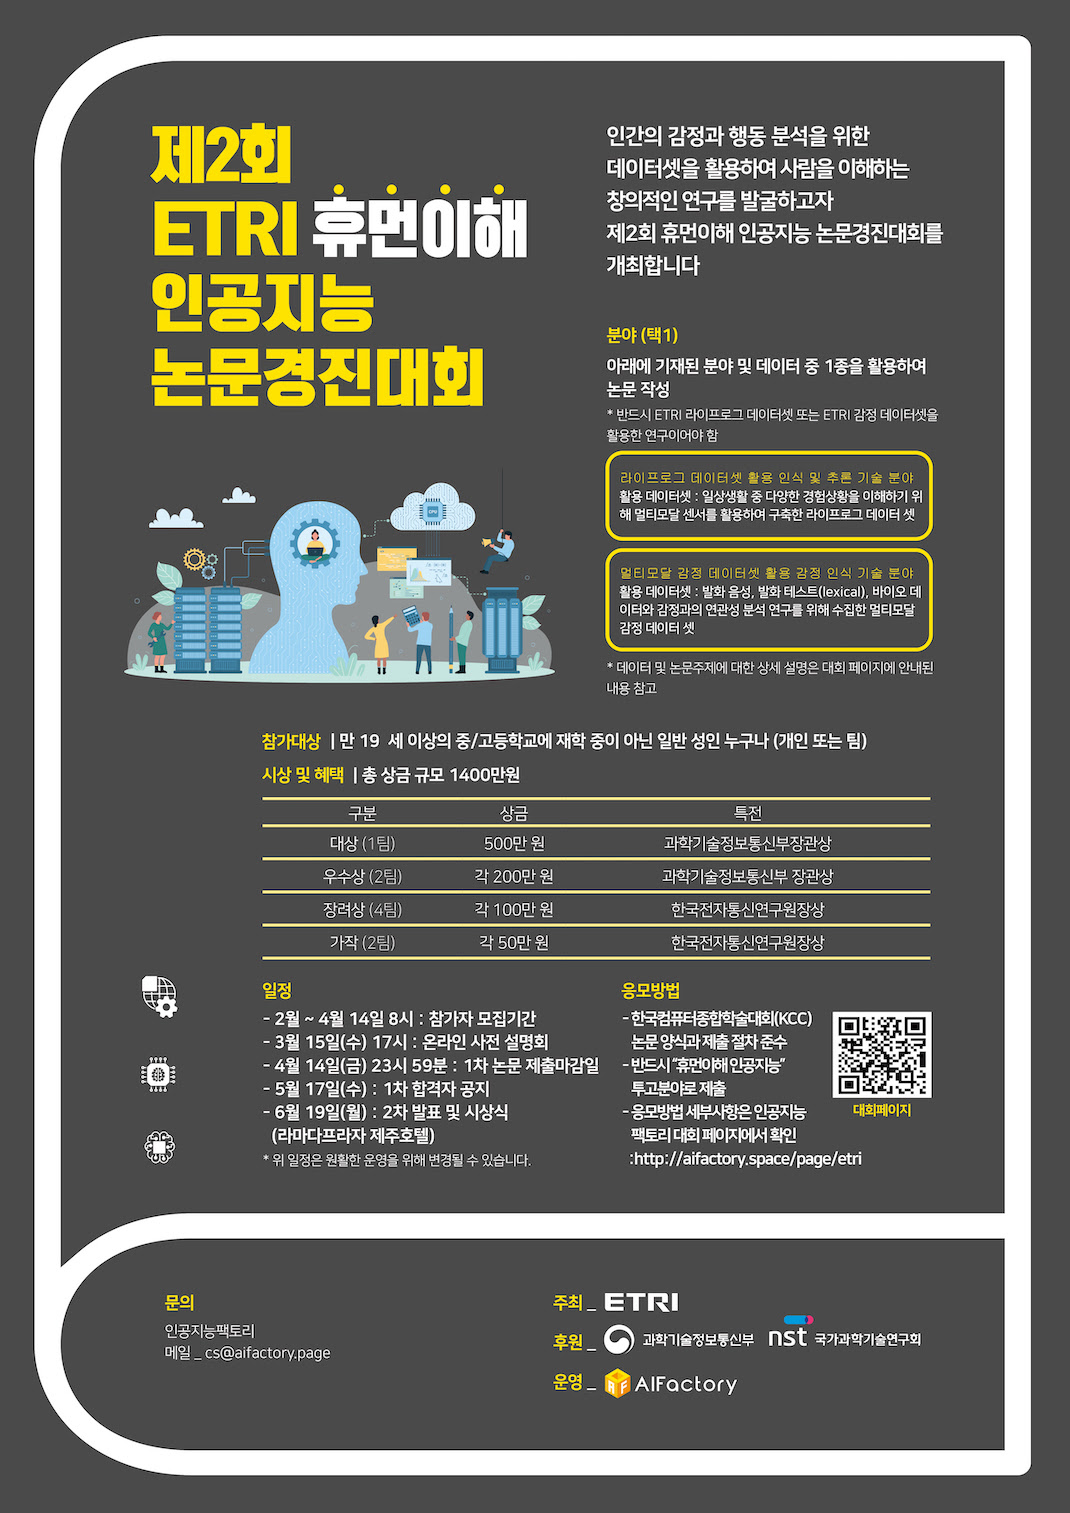 ETRI 휴먼이해 인공지능 논문경진대회